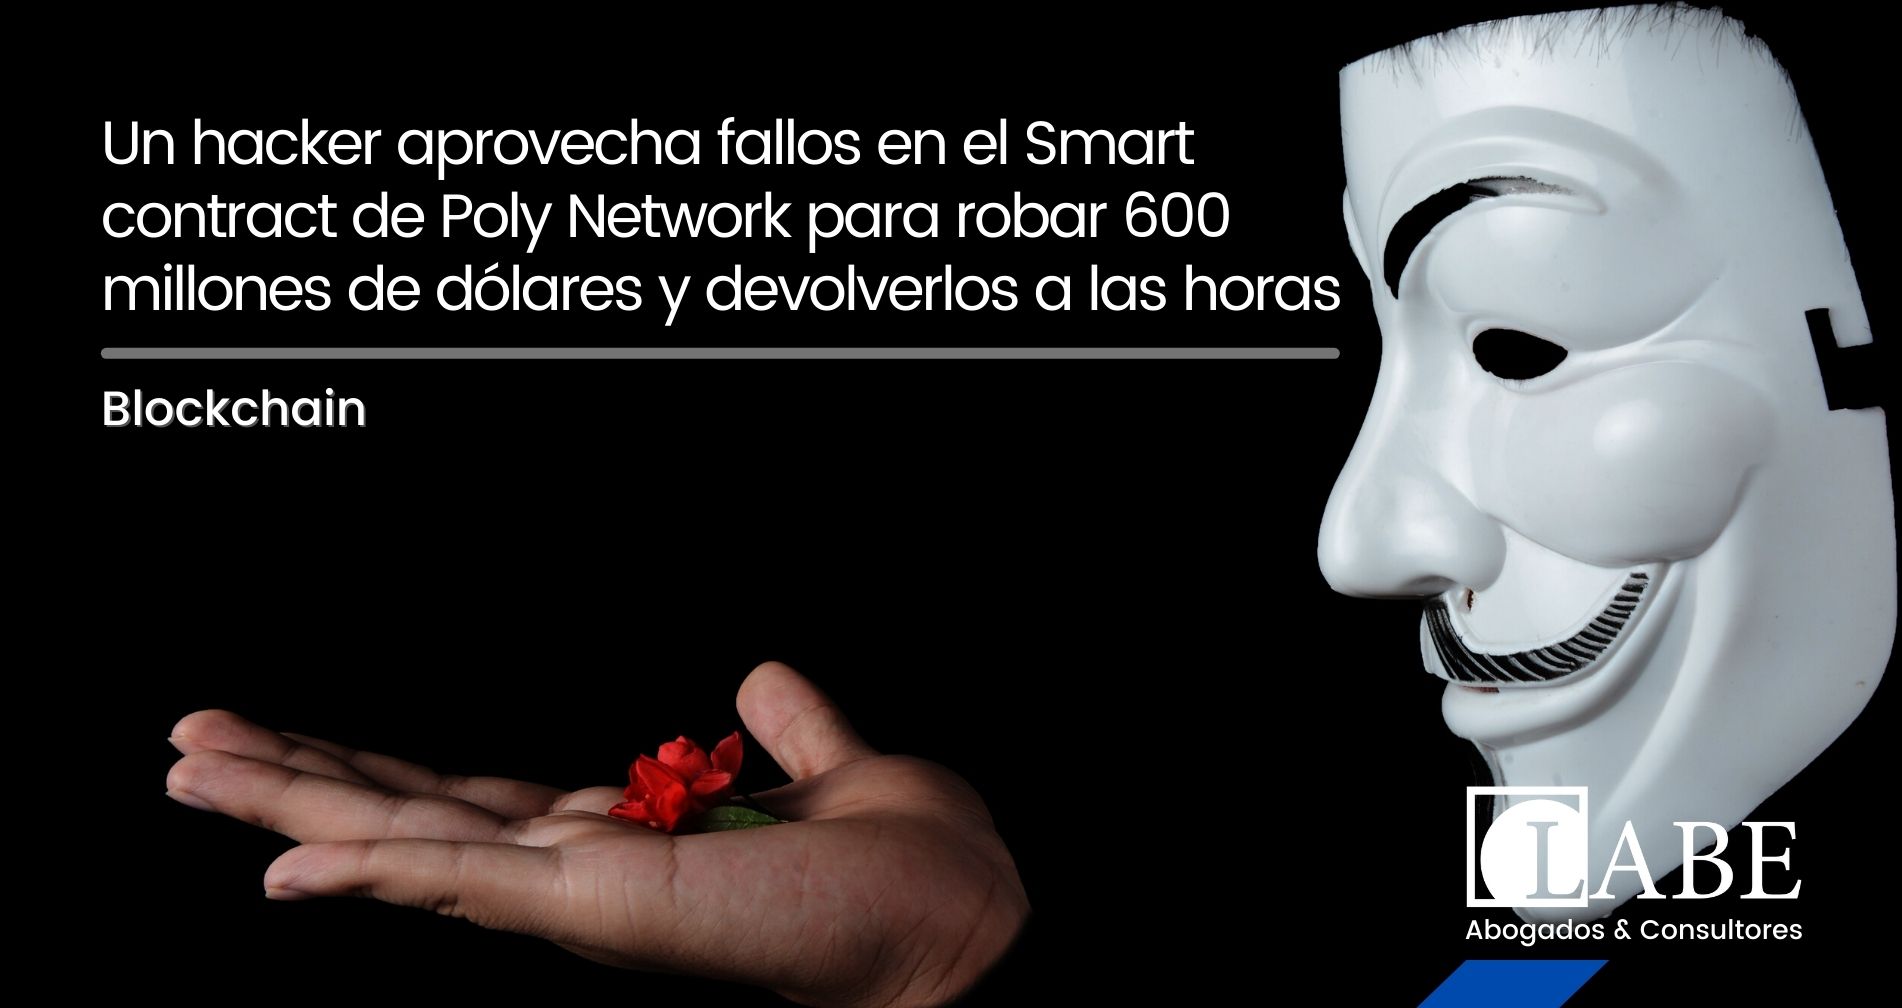 Un hacker aprovecha fallos en el Smart contract de Poly Network para robar 600 millones de dólares y devolverlos a las horas